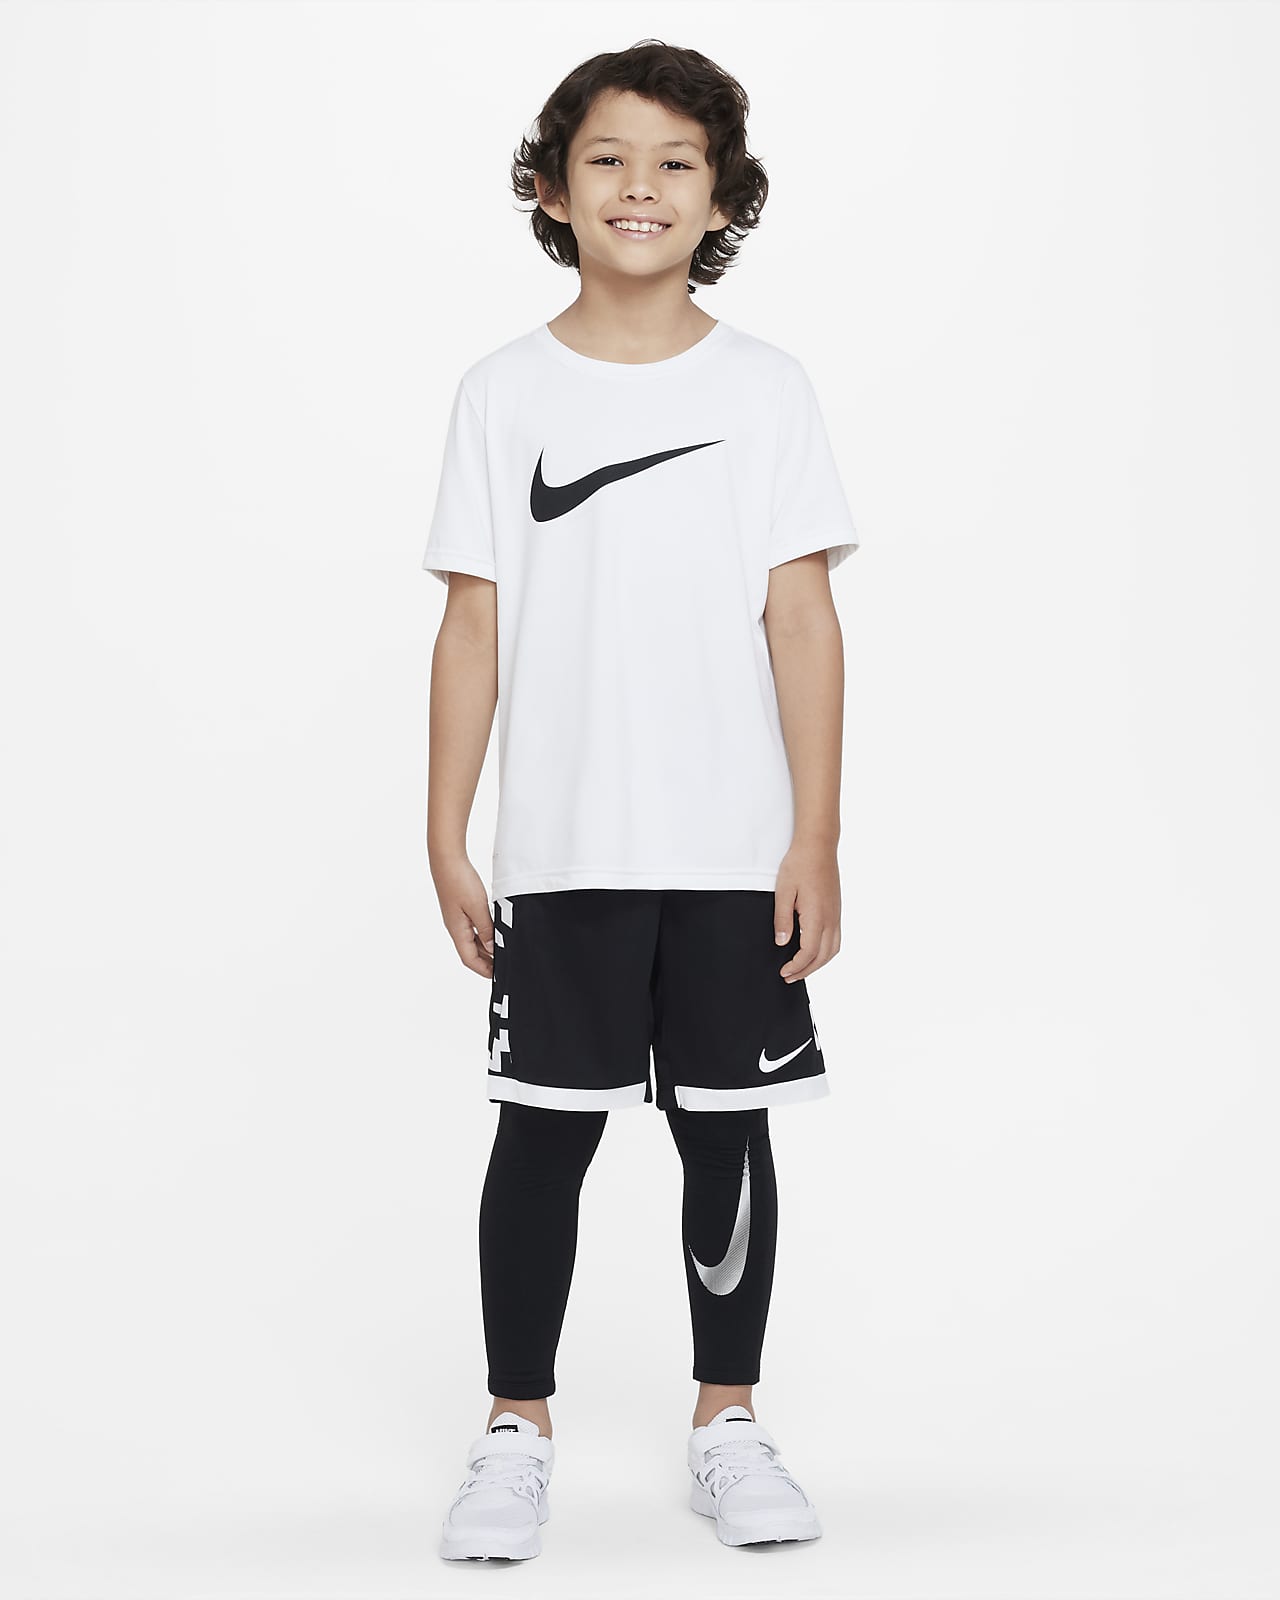 Nike Boys' Pro Warm Dri-FIT Tights